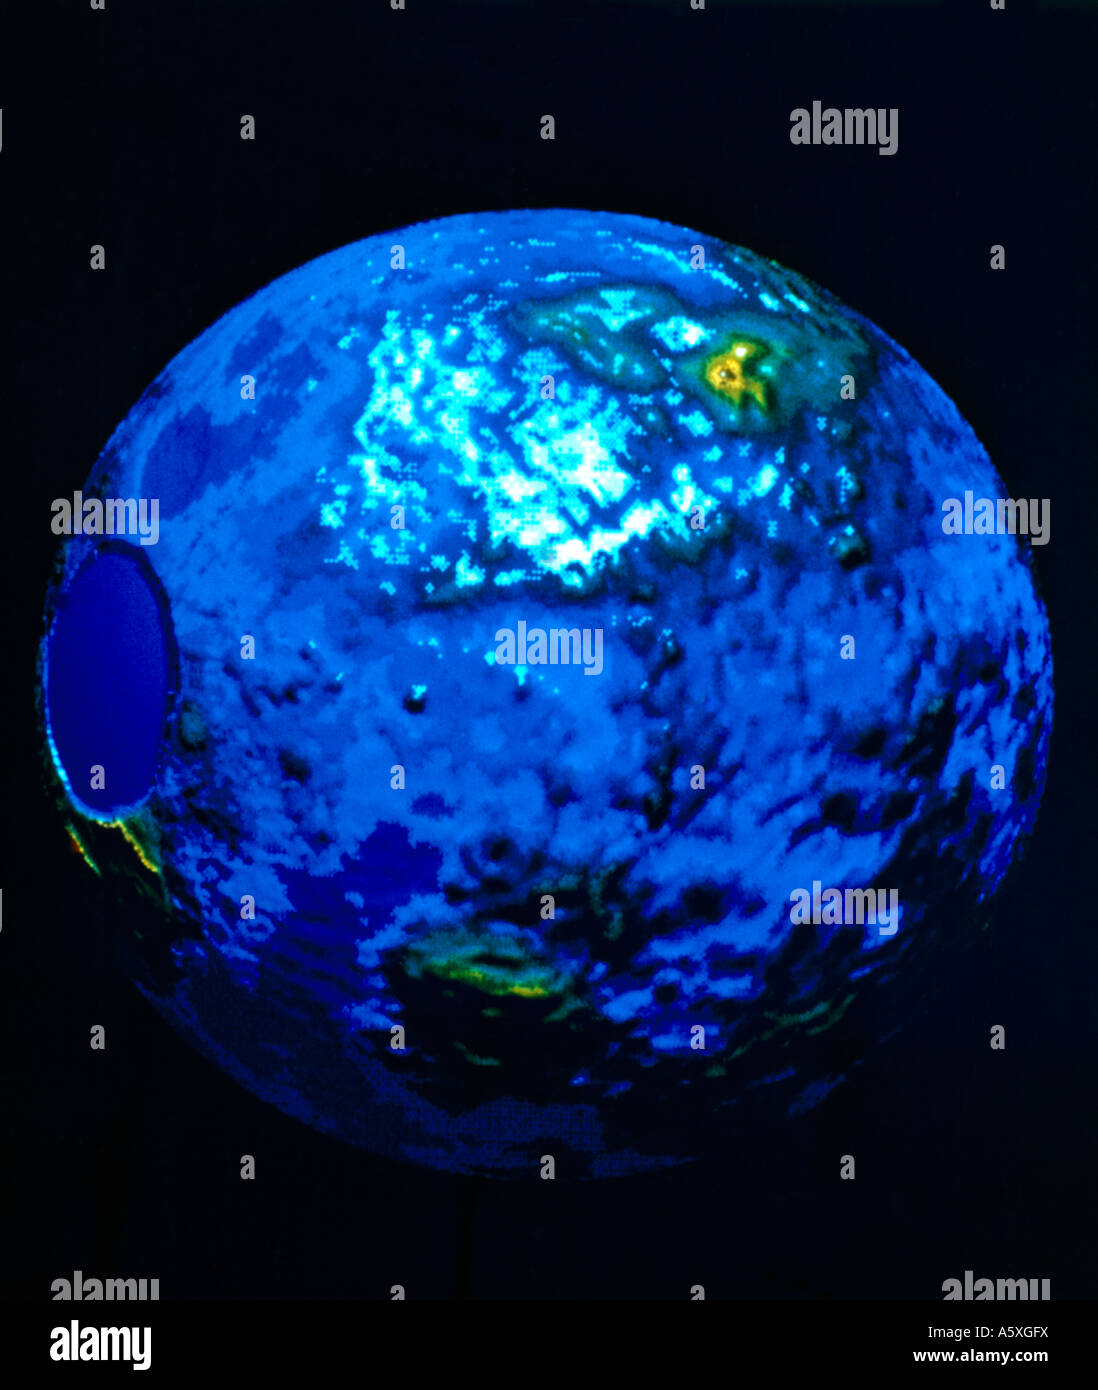 Falso colore della superficie di Venere preso da un altimetro radar sulla sonda Pioneer Venus Orbiter che mostra la regione vulcanica Beta, Ishtar Terra regio Foto Stock